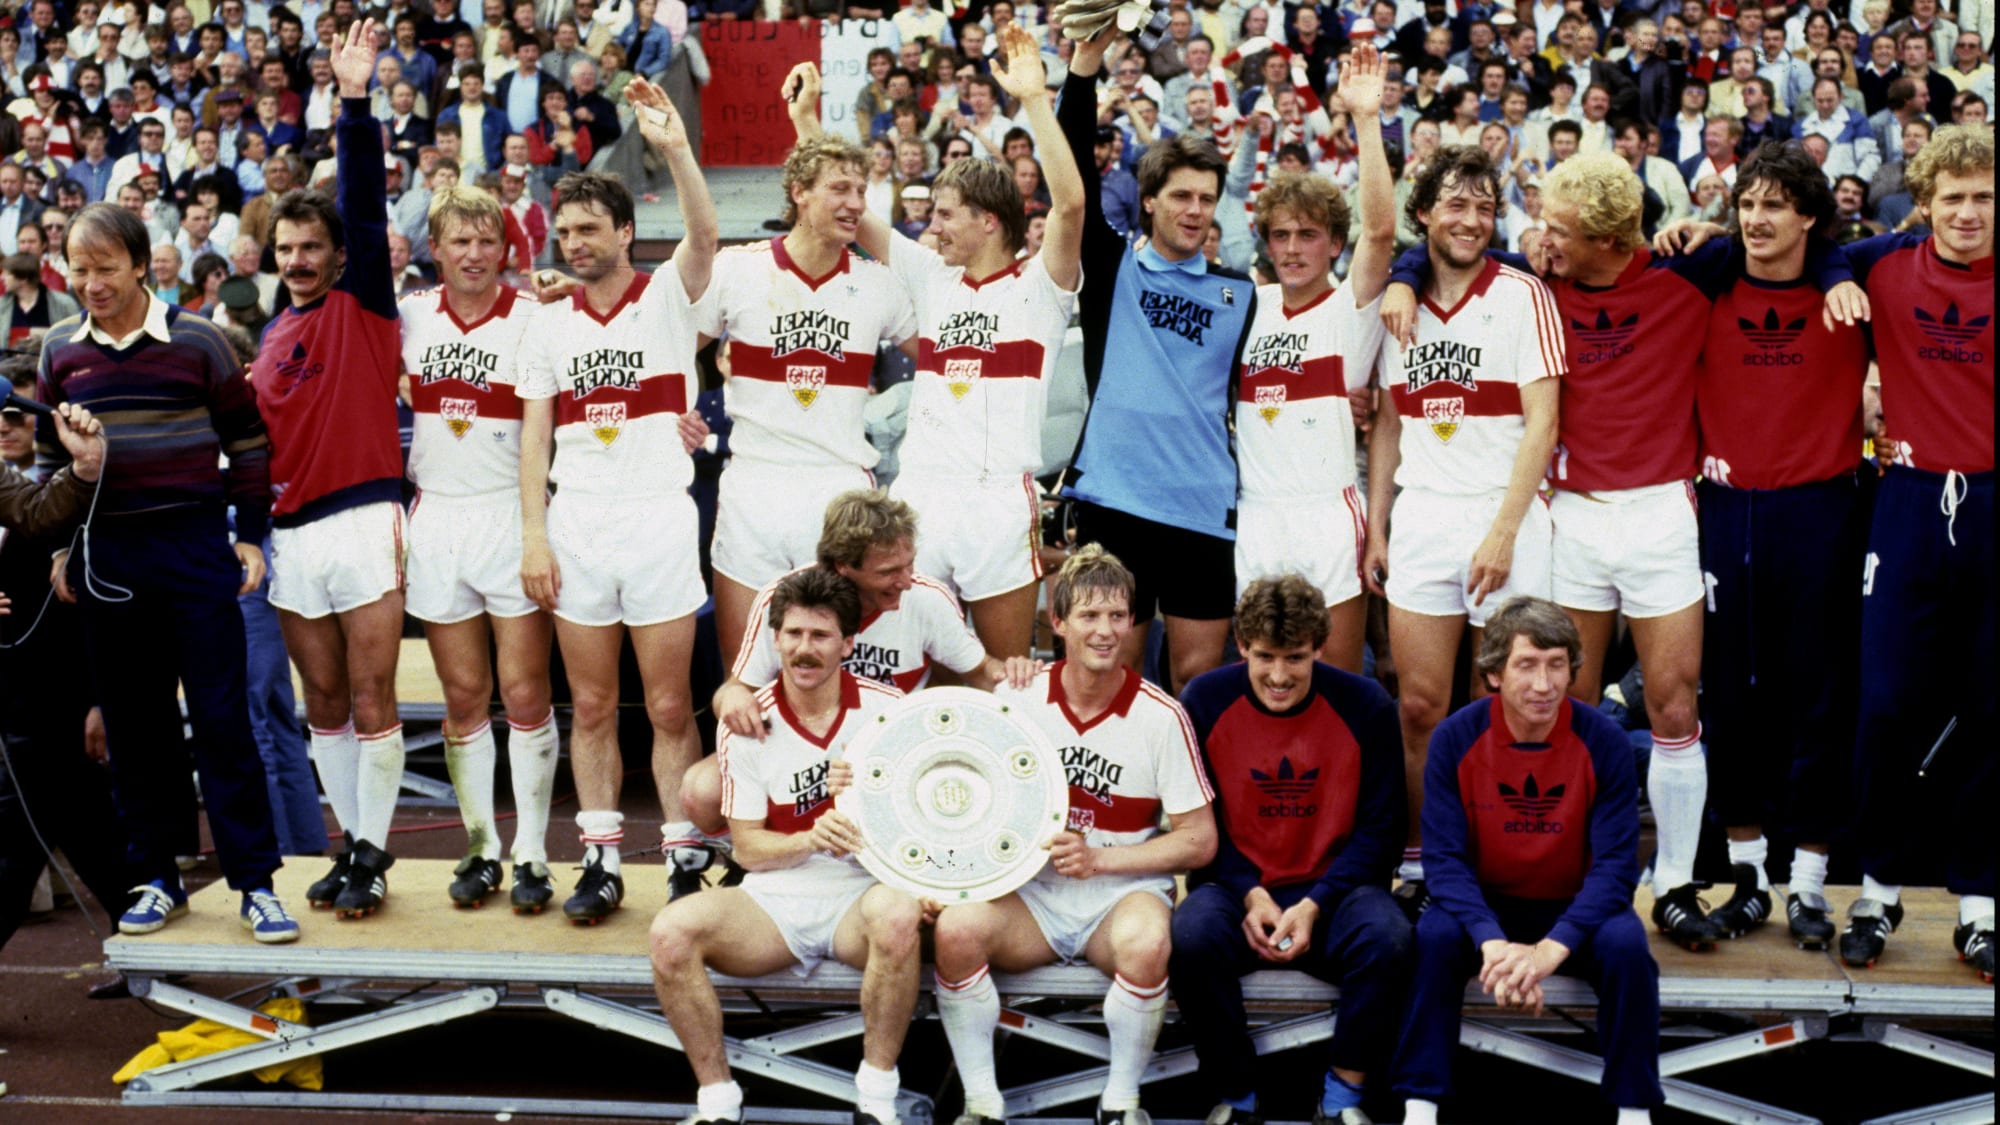 VfB Stuttgart 1984